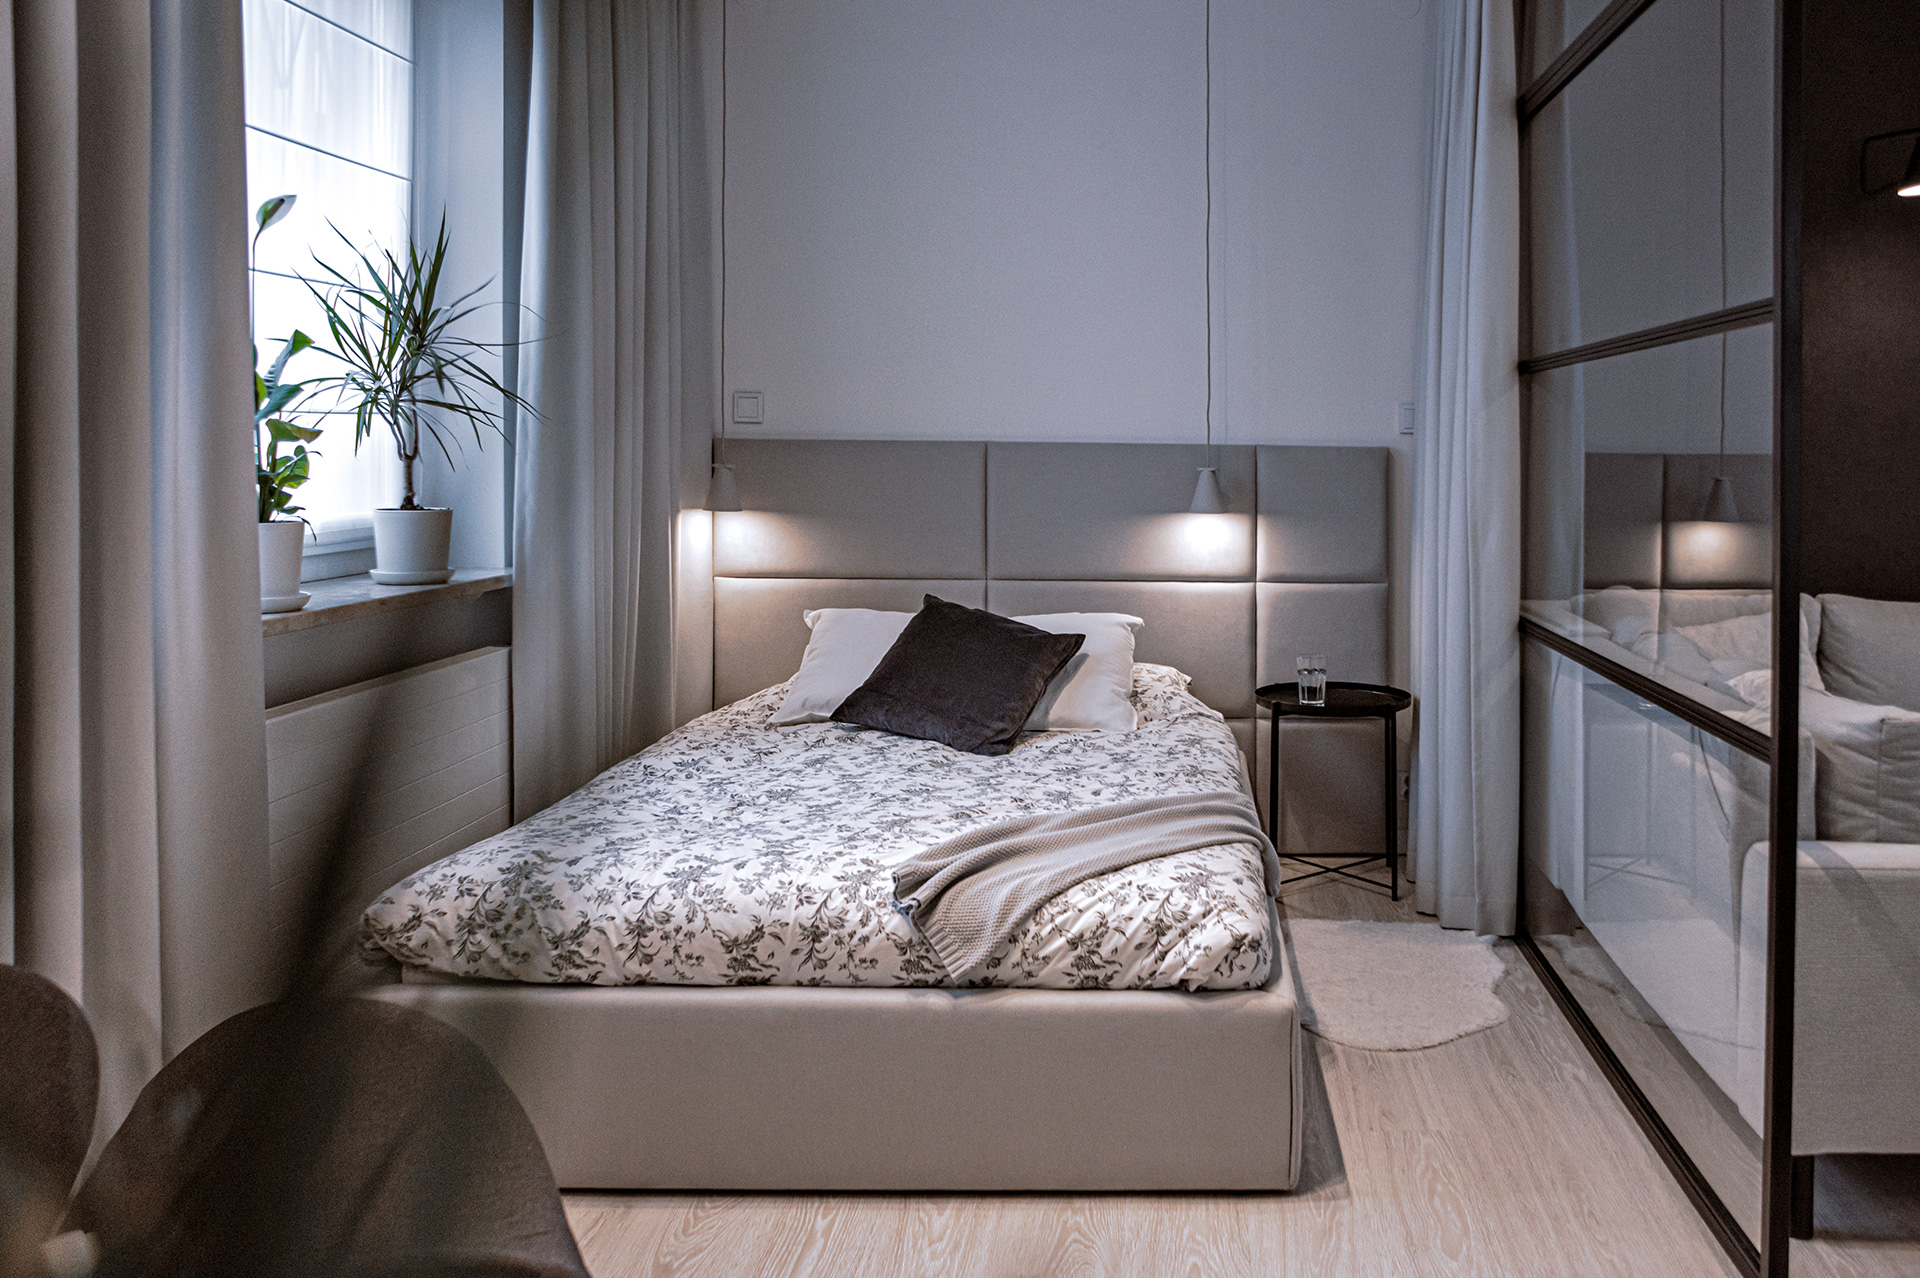 Lampki w wezgłowiu łóżka mają możliwość regulacji kątą padania światła.